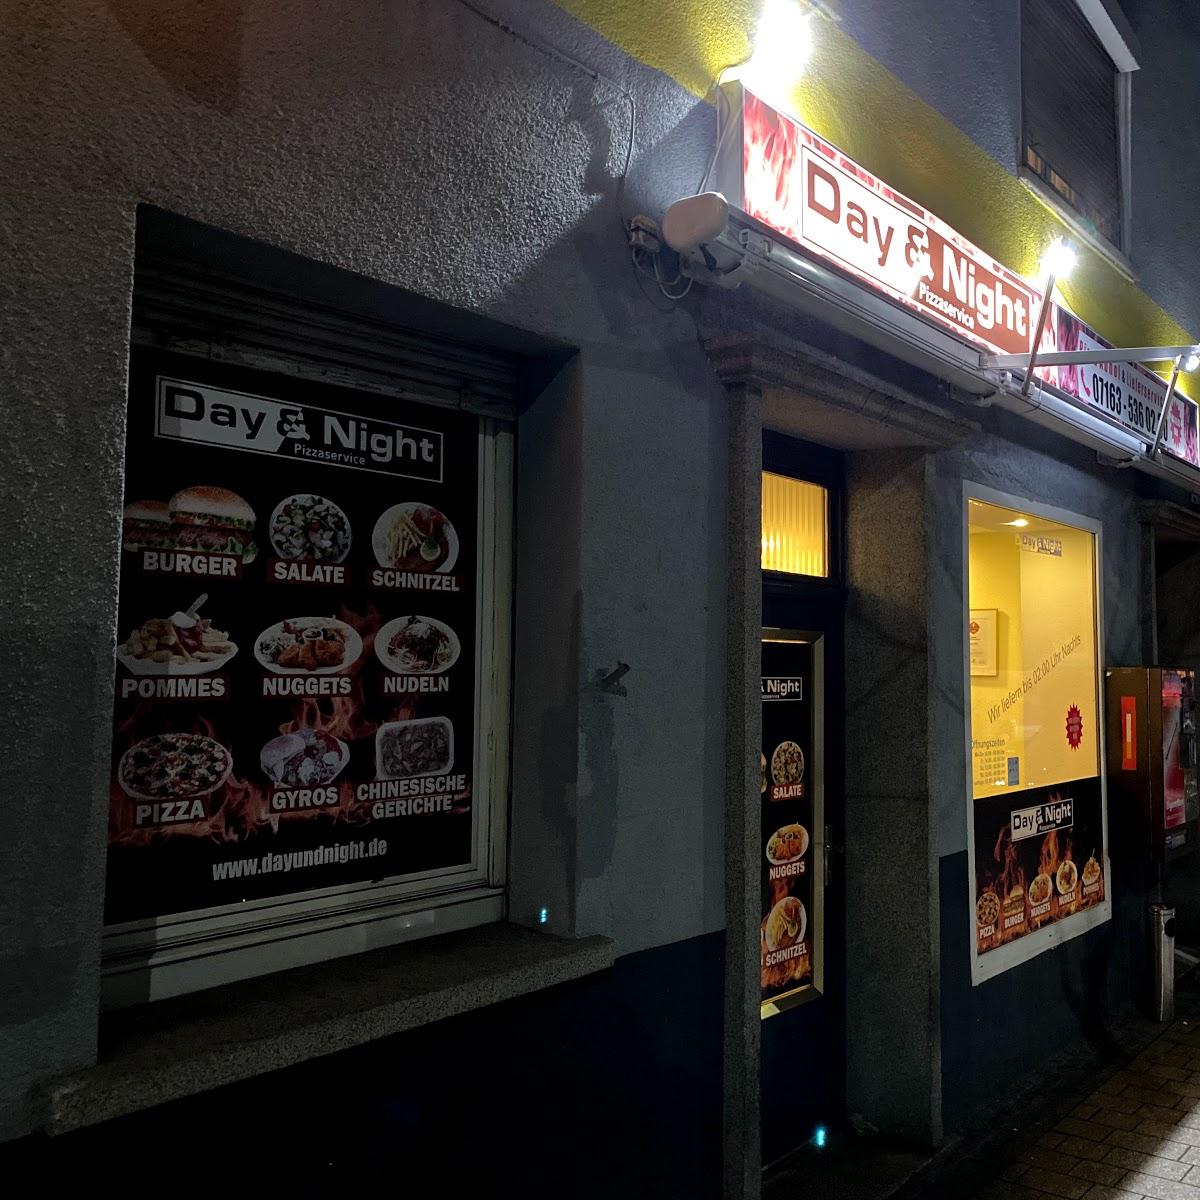 Restaurant "Day & Night Pizzaservice Ebersbach" in Ebersbach an der Fils